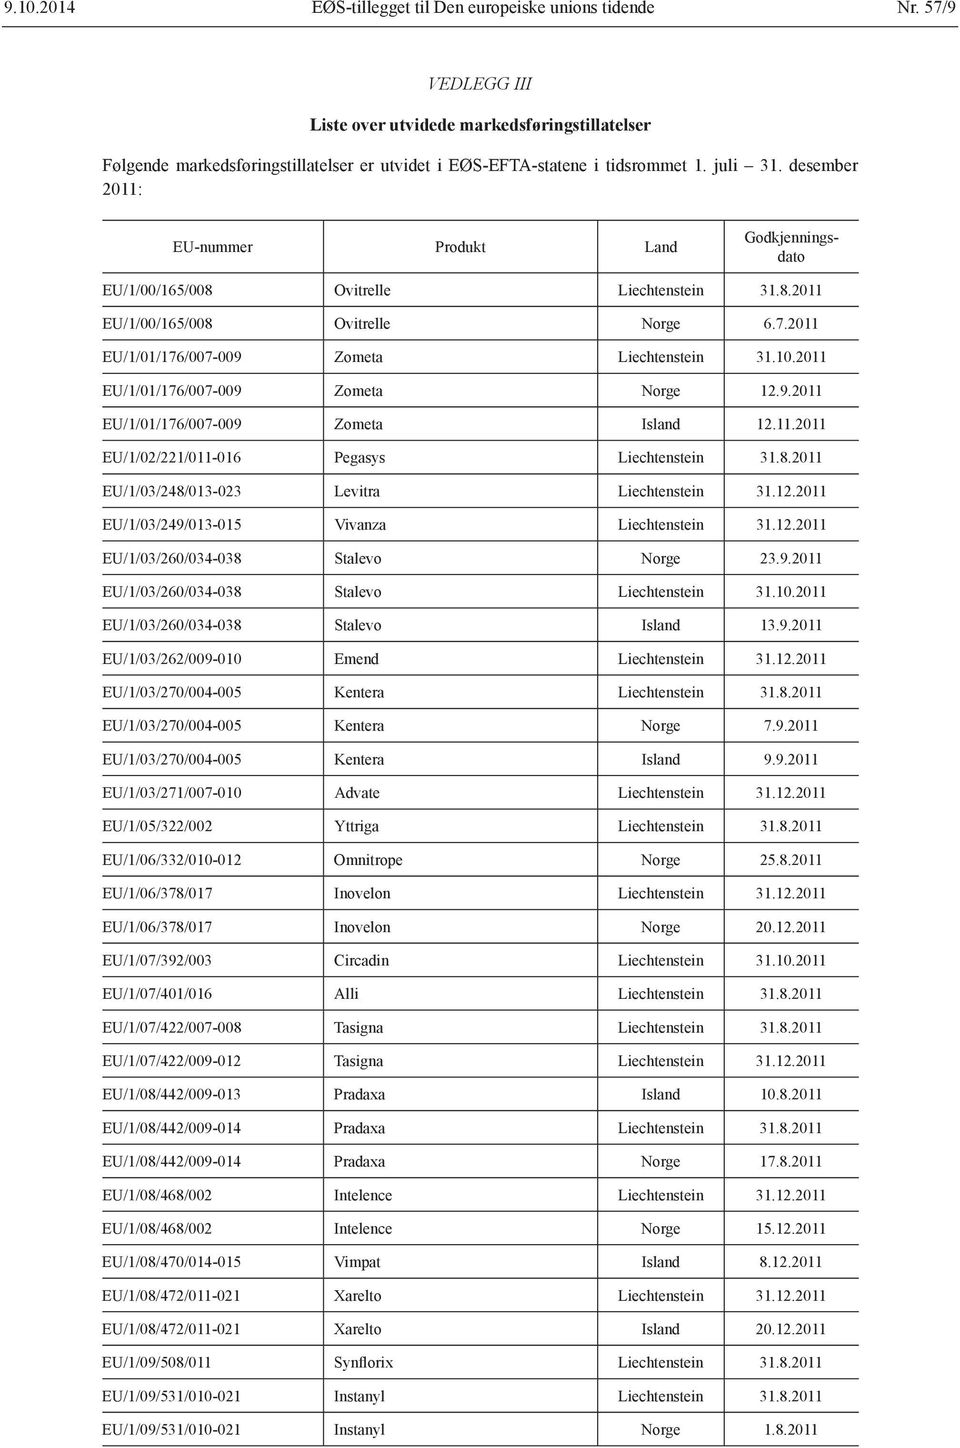 desember 2011: EU/1/00/165/008 Ovitrelle Liechtenstein 31.8.2011 EU/1/00/165/008 Ovitrelle Norge 6.7.2011 EU/1/01/176/007-009 Zometa Liechtenstein 31.10.2011 EU/1/01/176/007-009 Zometa Norge 12.9.2011 EU/1/01/176/007-009 Zometa Island 12.